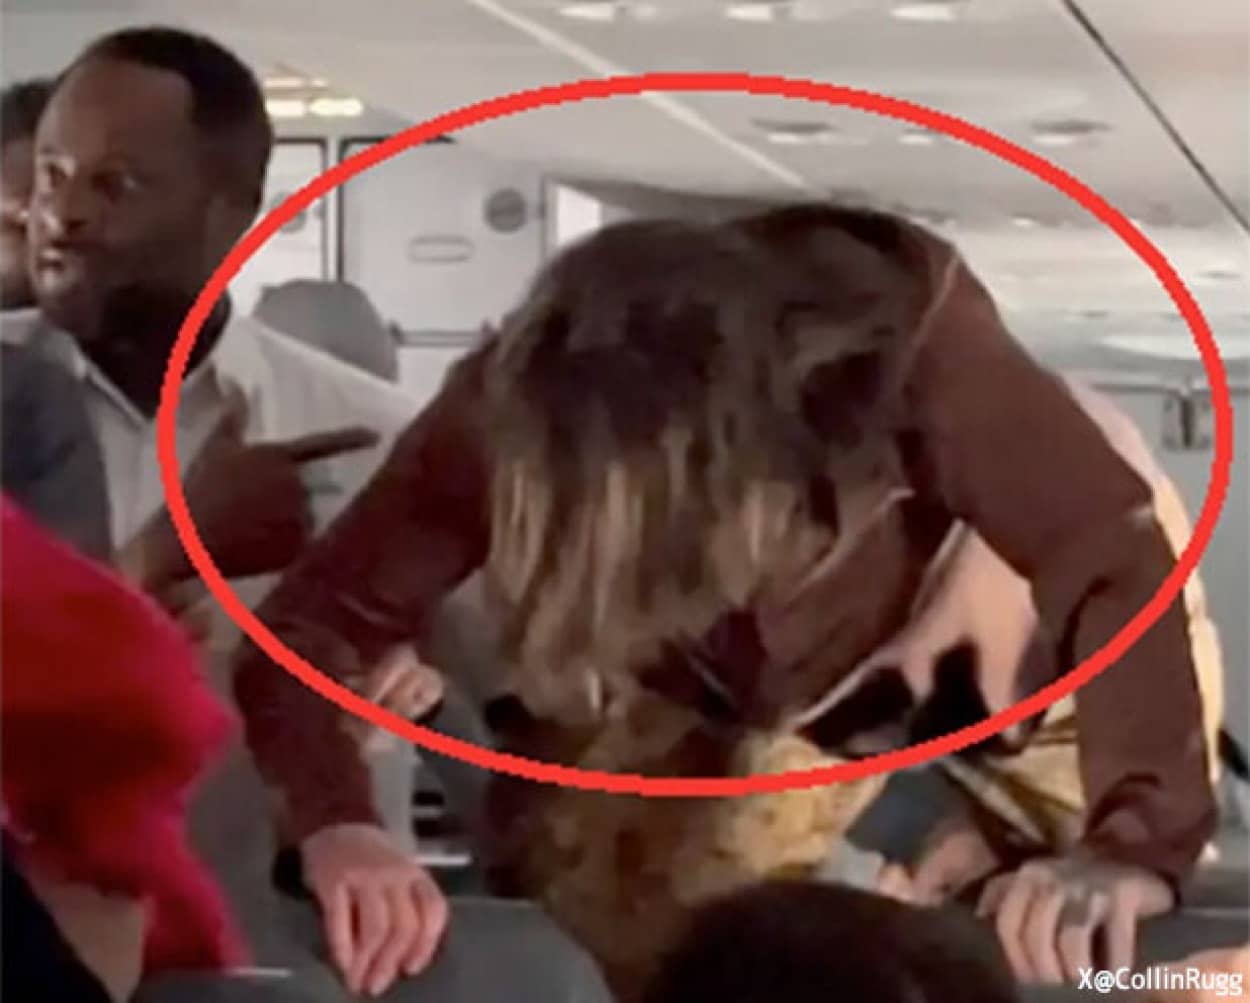 飛行機内で女性が奇妙な行動を起こし乗客騒然